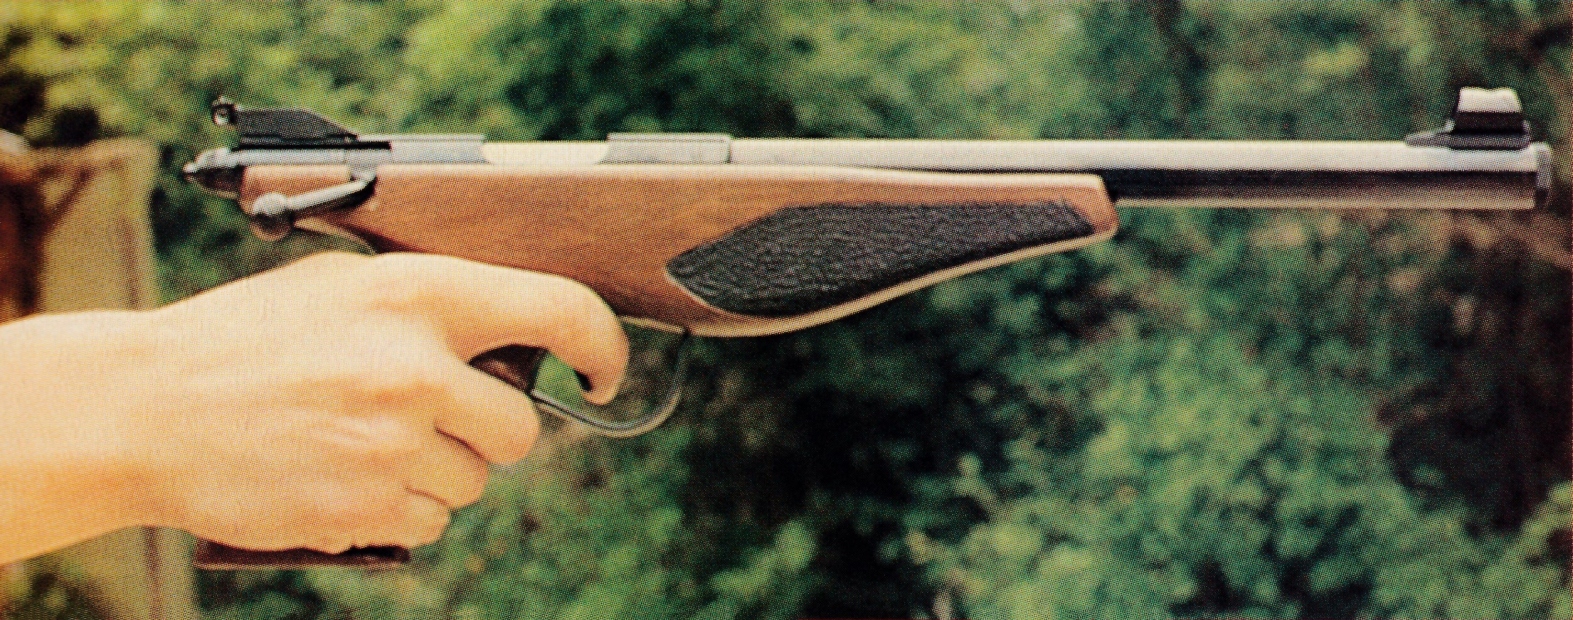 Le pistolet Phantom reste suffisamment léger pour permettre le tir à bras franc.